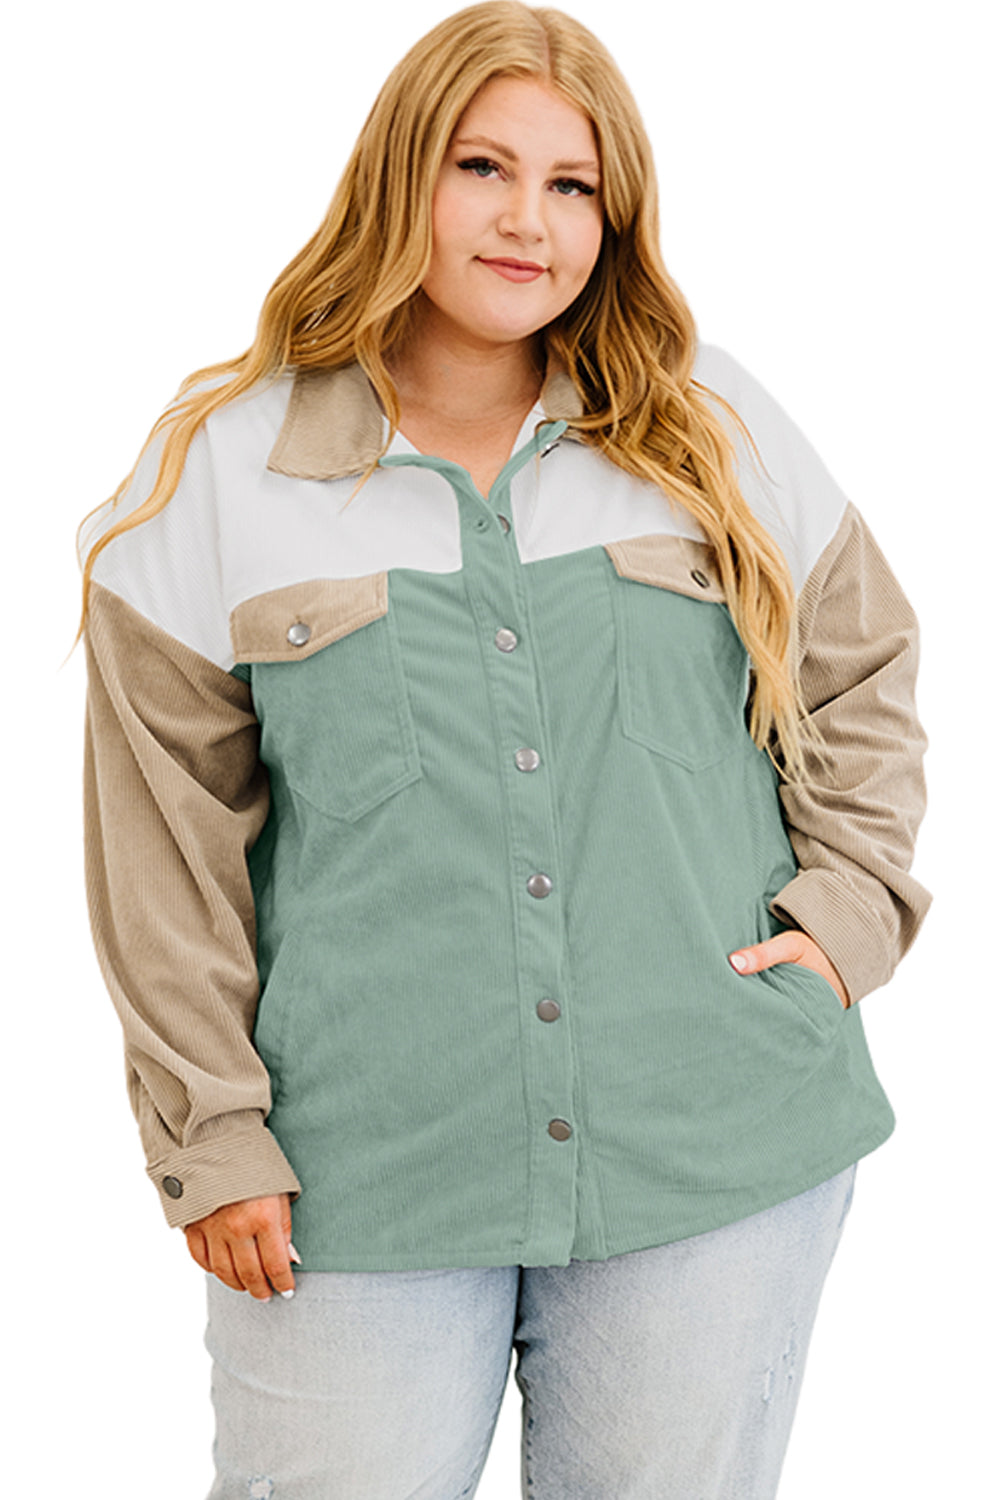 Višebojna jakna veće veličine s džepnim samtom s kopčanjem i bojama